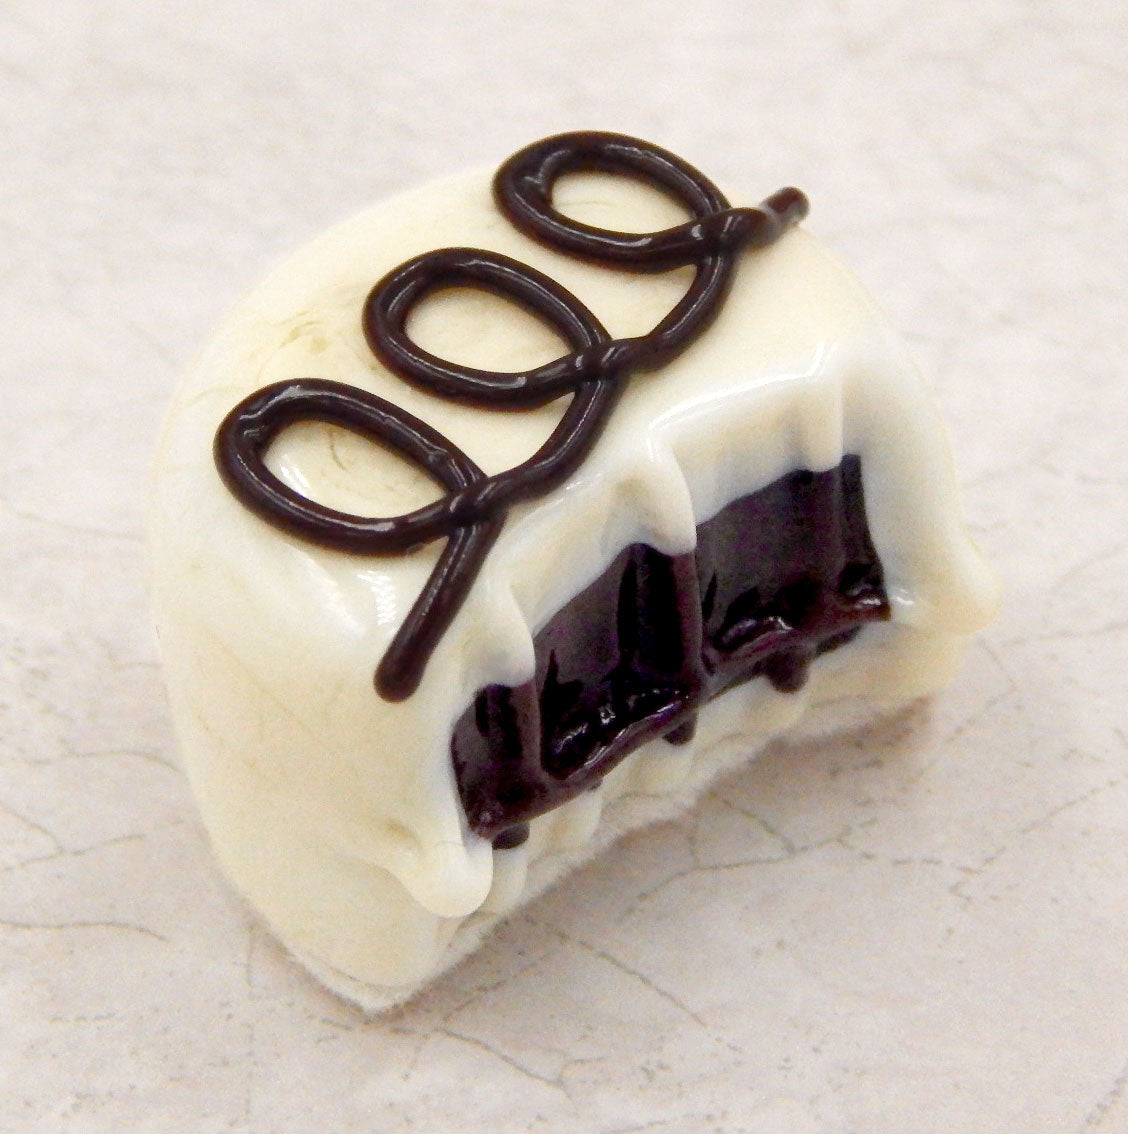 Bitten Vanilla Chocolate with Dark Chocolate Loops (B16-021VCC)